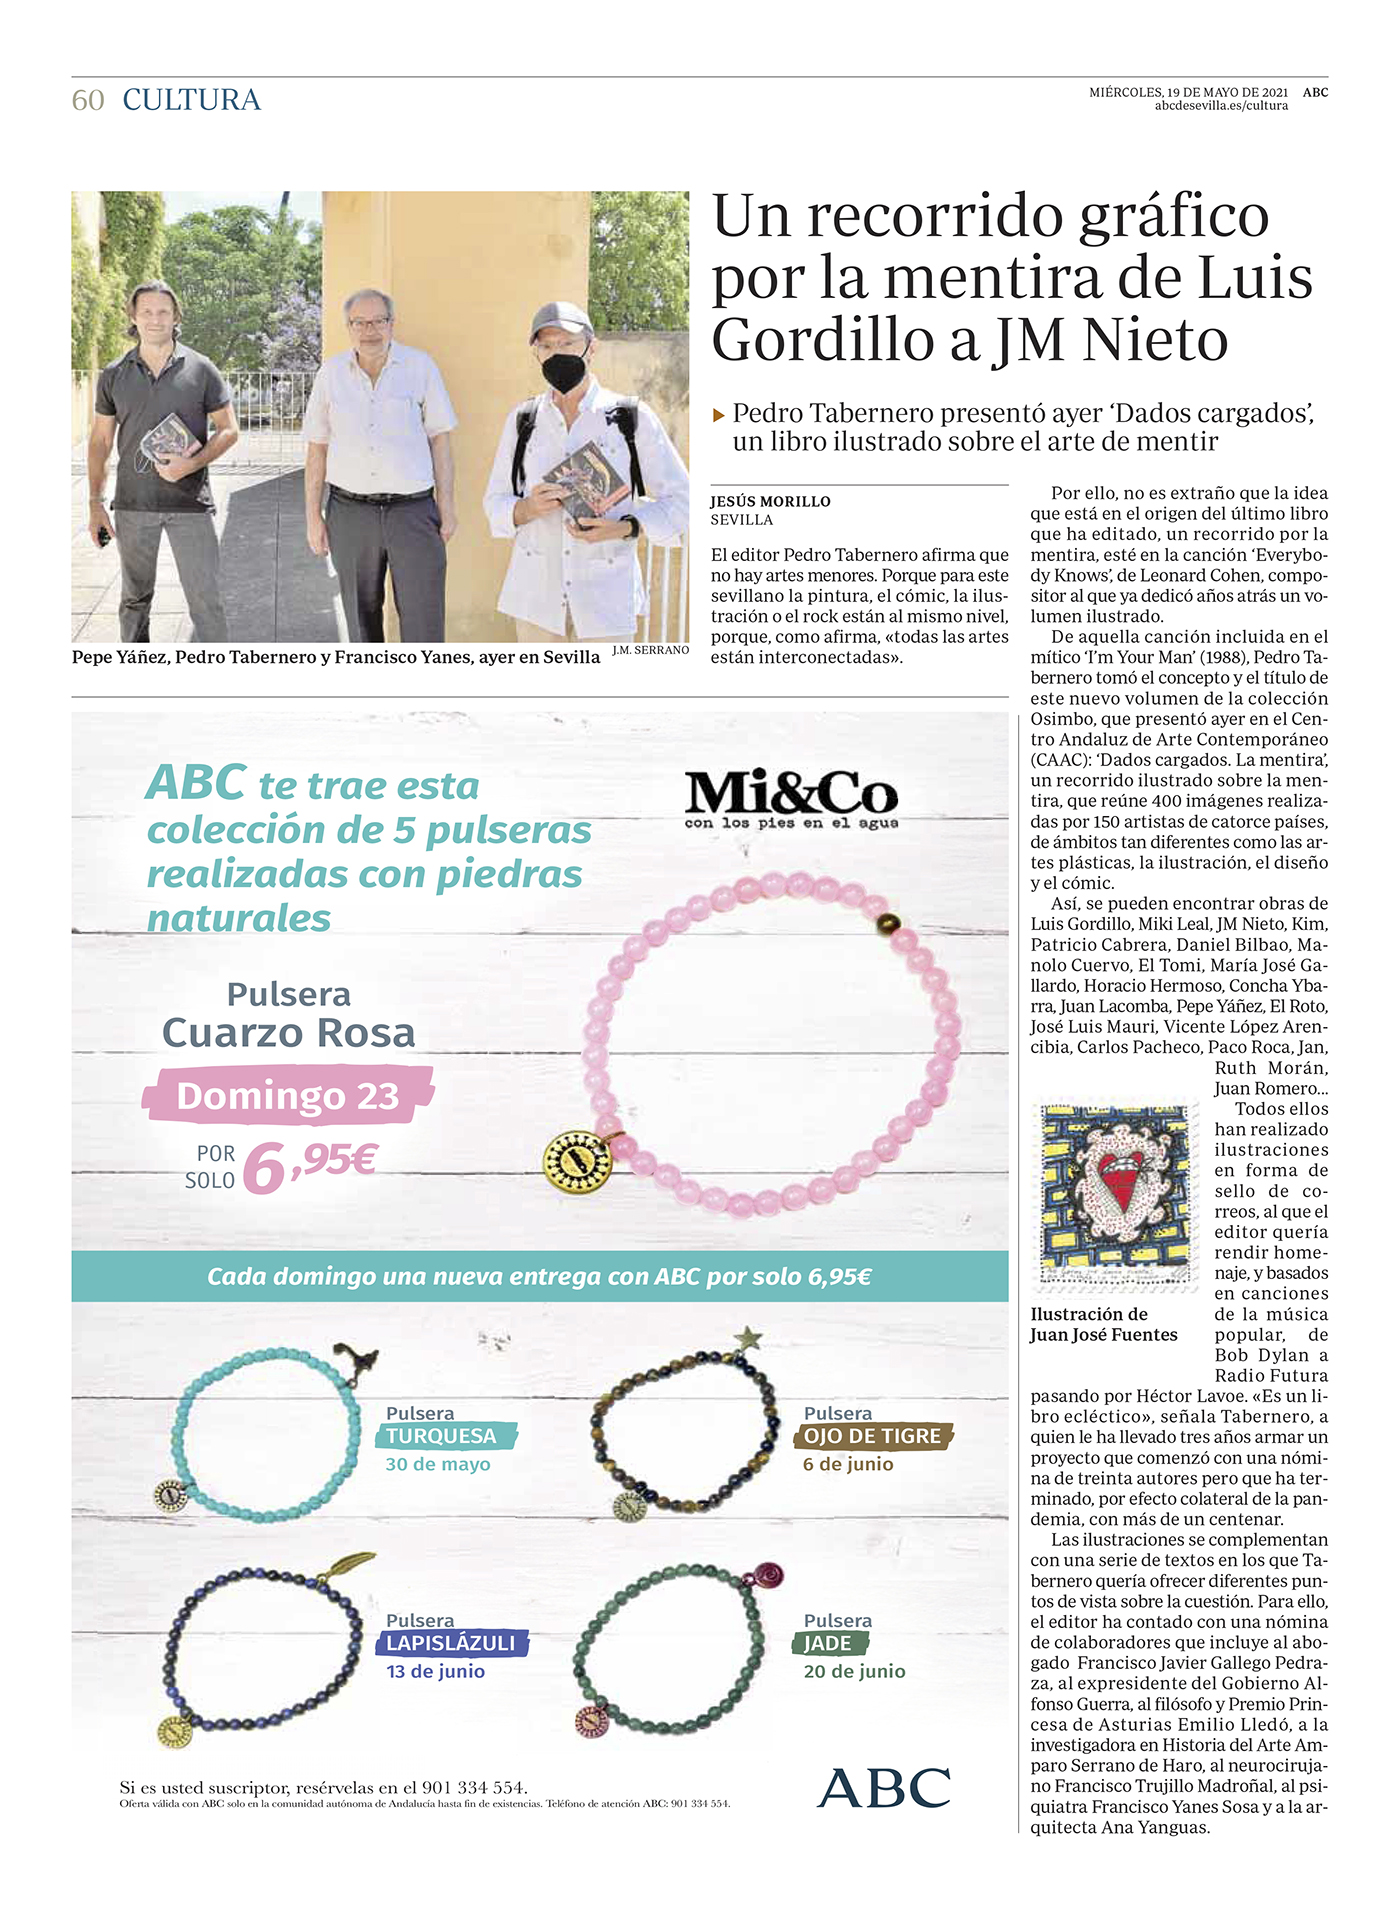 Un recorrido por el poder de la mentira: de Luis Gordillo a JM Nieto, pasando por Alfonso Guerra